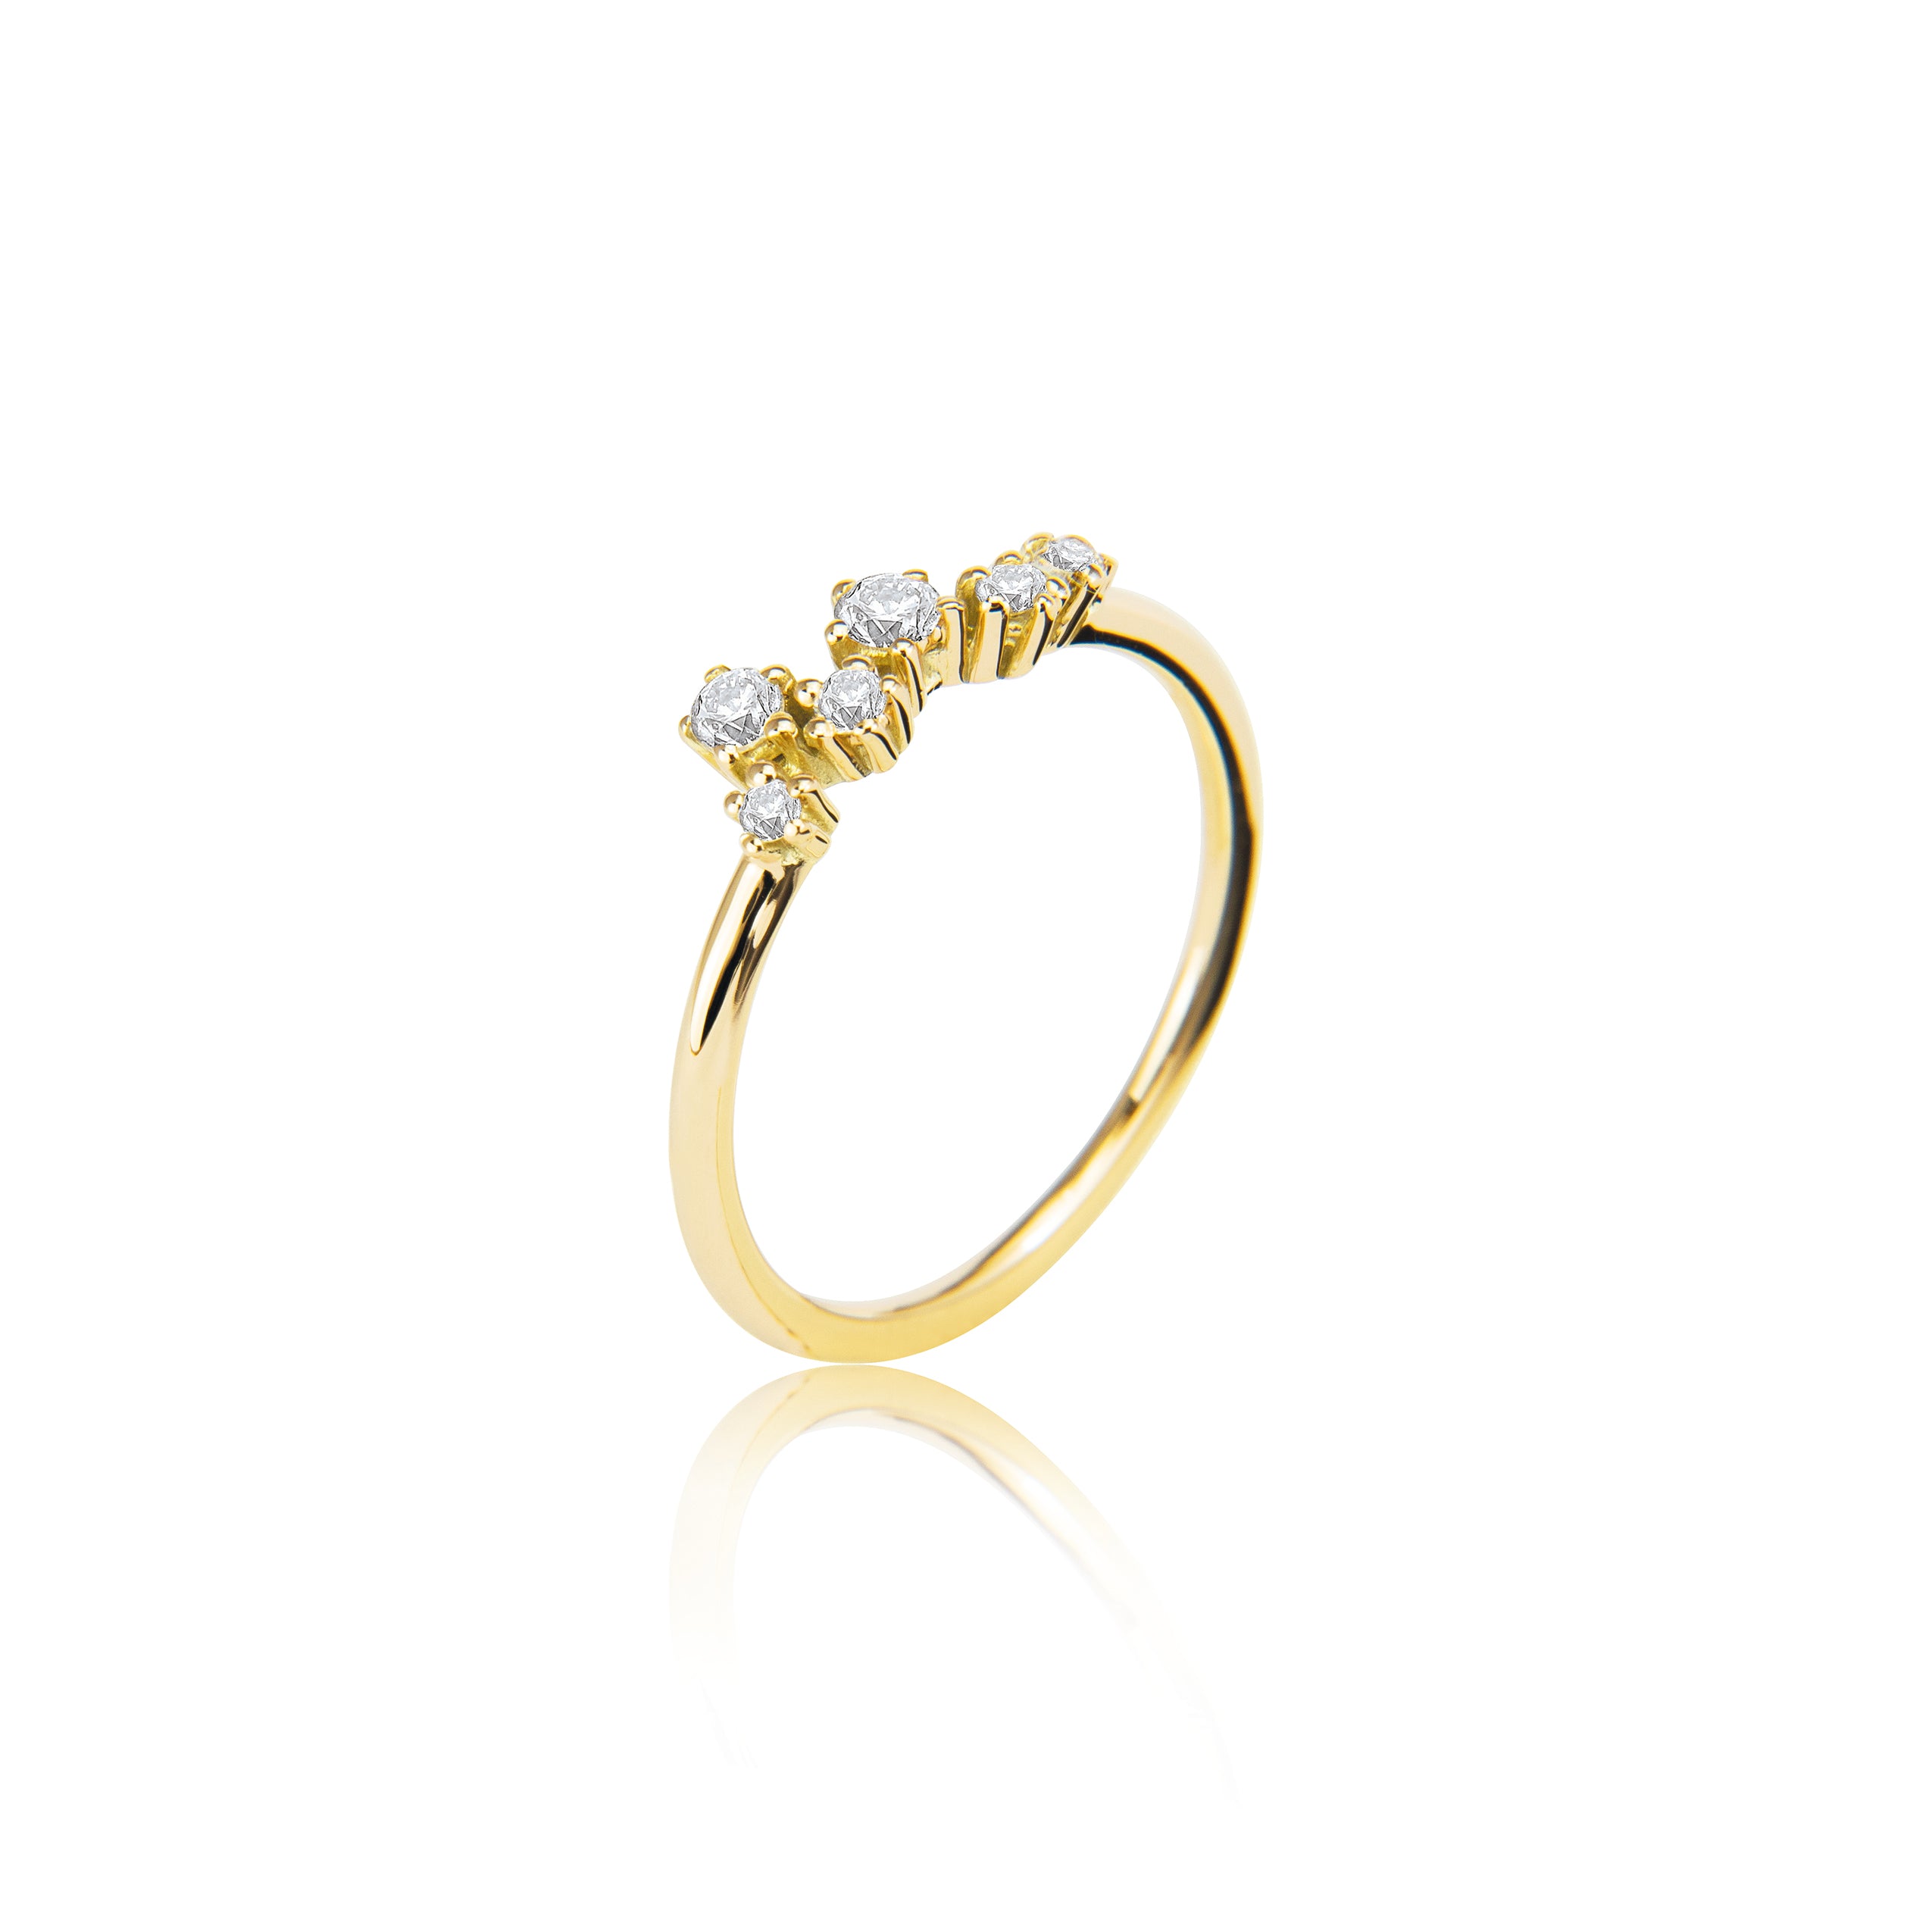 Sparkle ring "medium" i 585/- guld med 6 diamanter